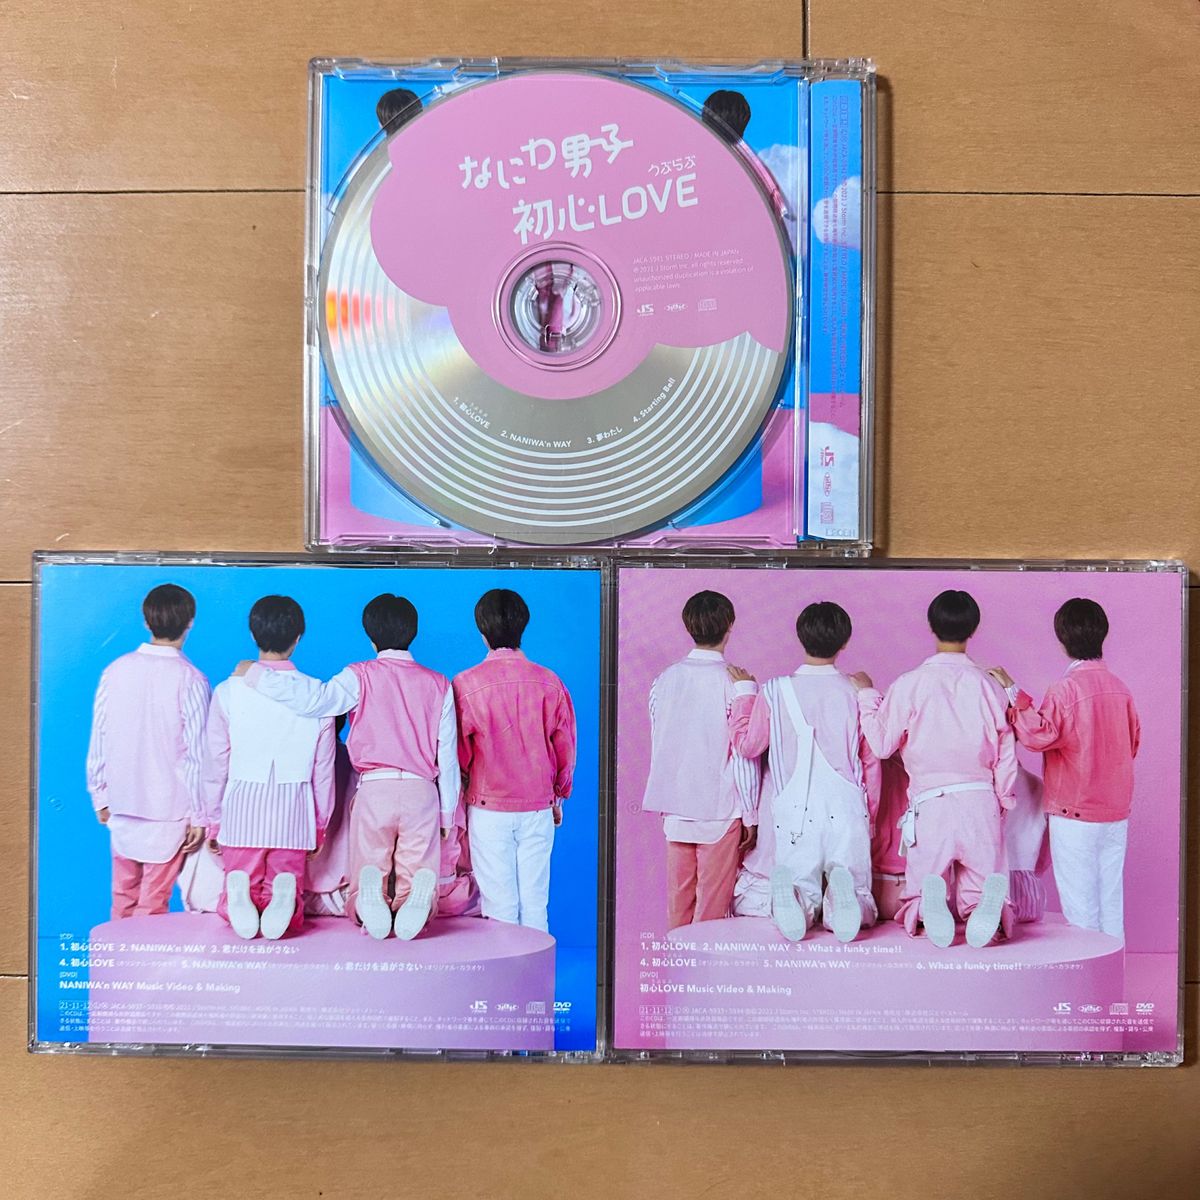 なにわ男子 CD DVD 初心love 通常盤 初回限定盤 セット